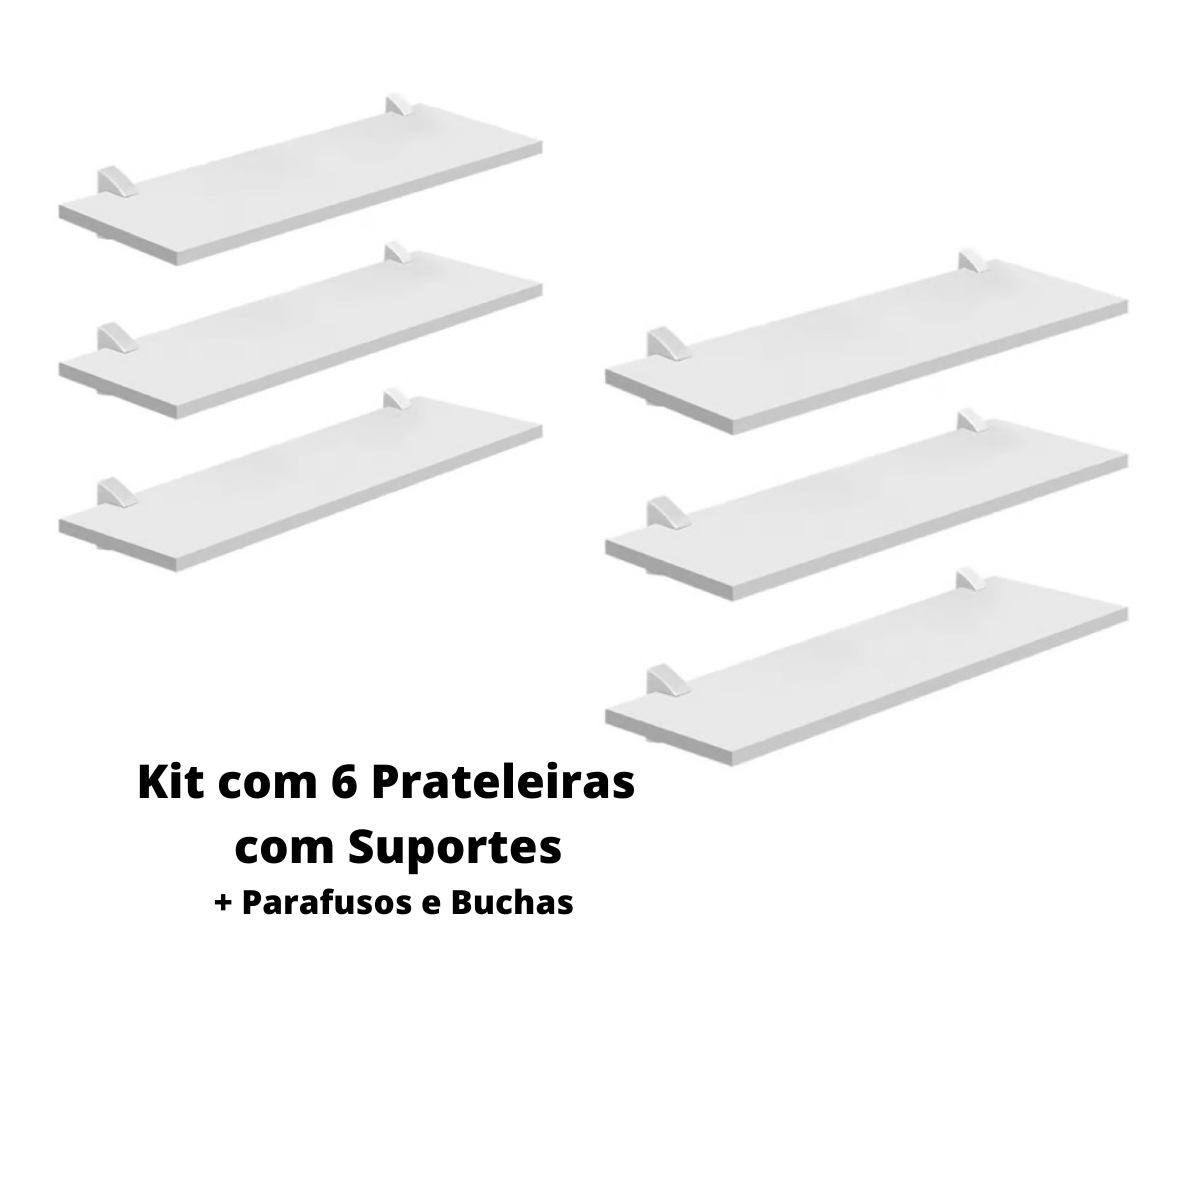 Kit com 6 Prateleiras Mdp Bcas 20x40 com Suportes D-core - 1